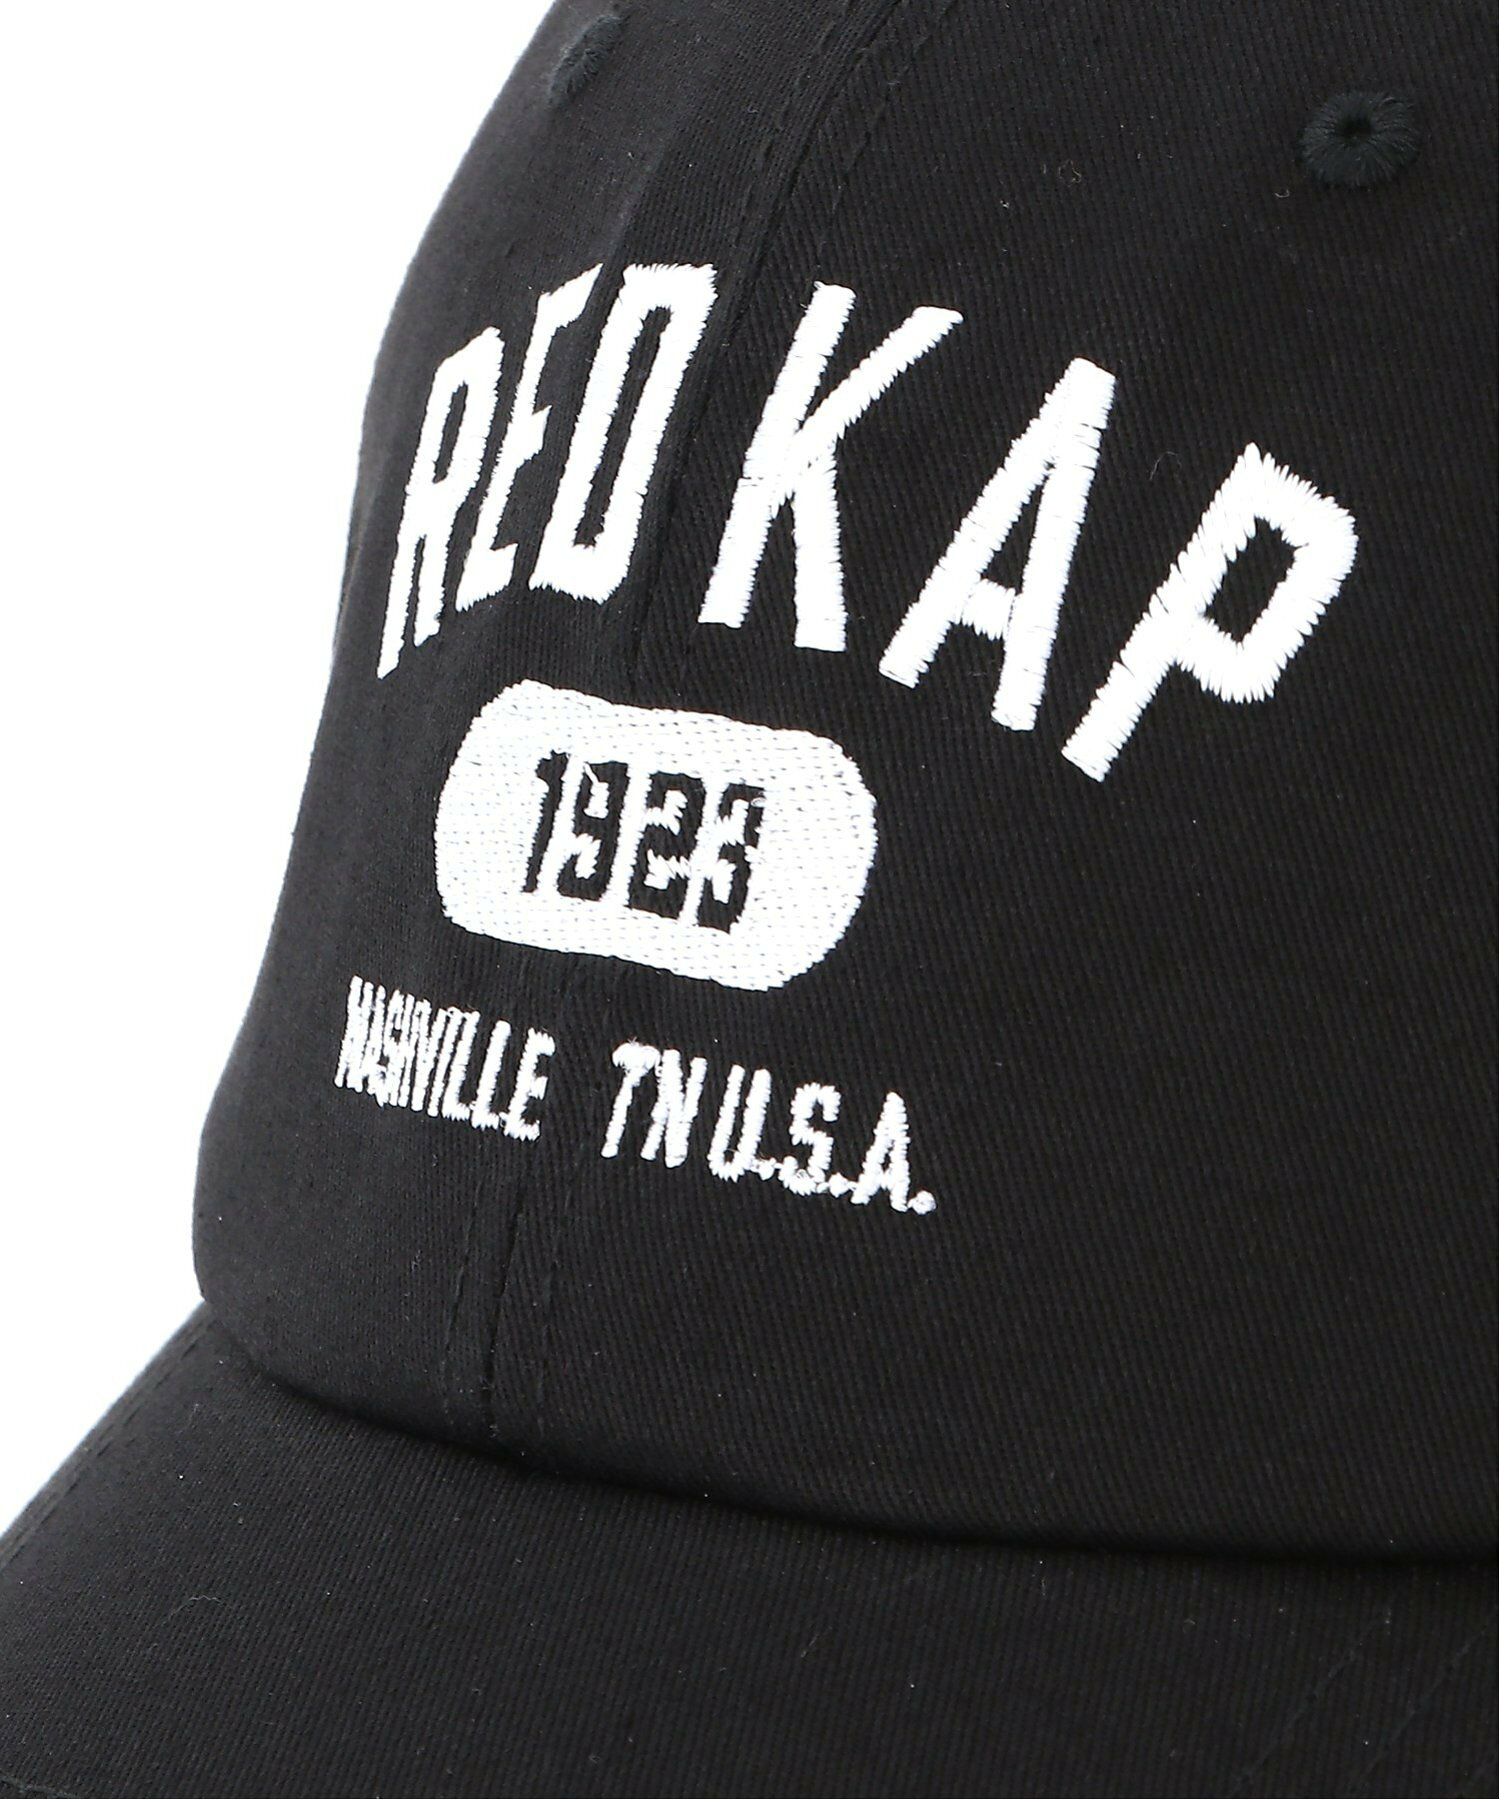 RED KAP/(U)【Kt】【RK9002】【RED KAP】1923 LOGO CAP